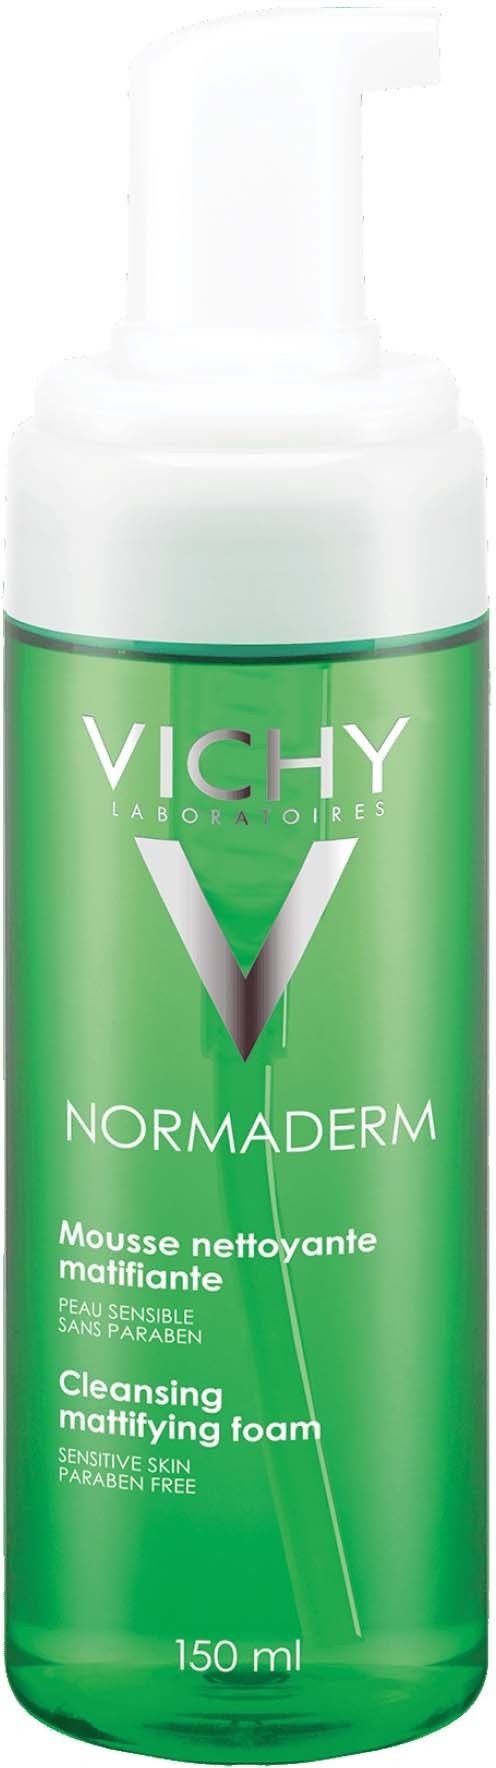 фото упаковки Vichy Normaderm очищающий мусс матирующий